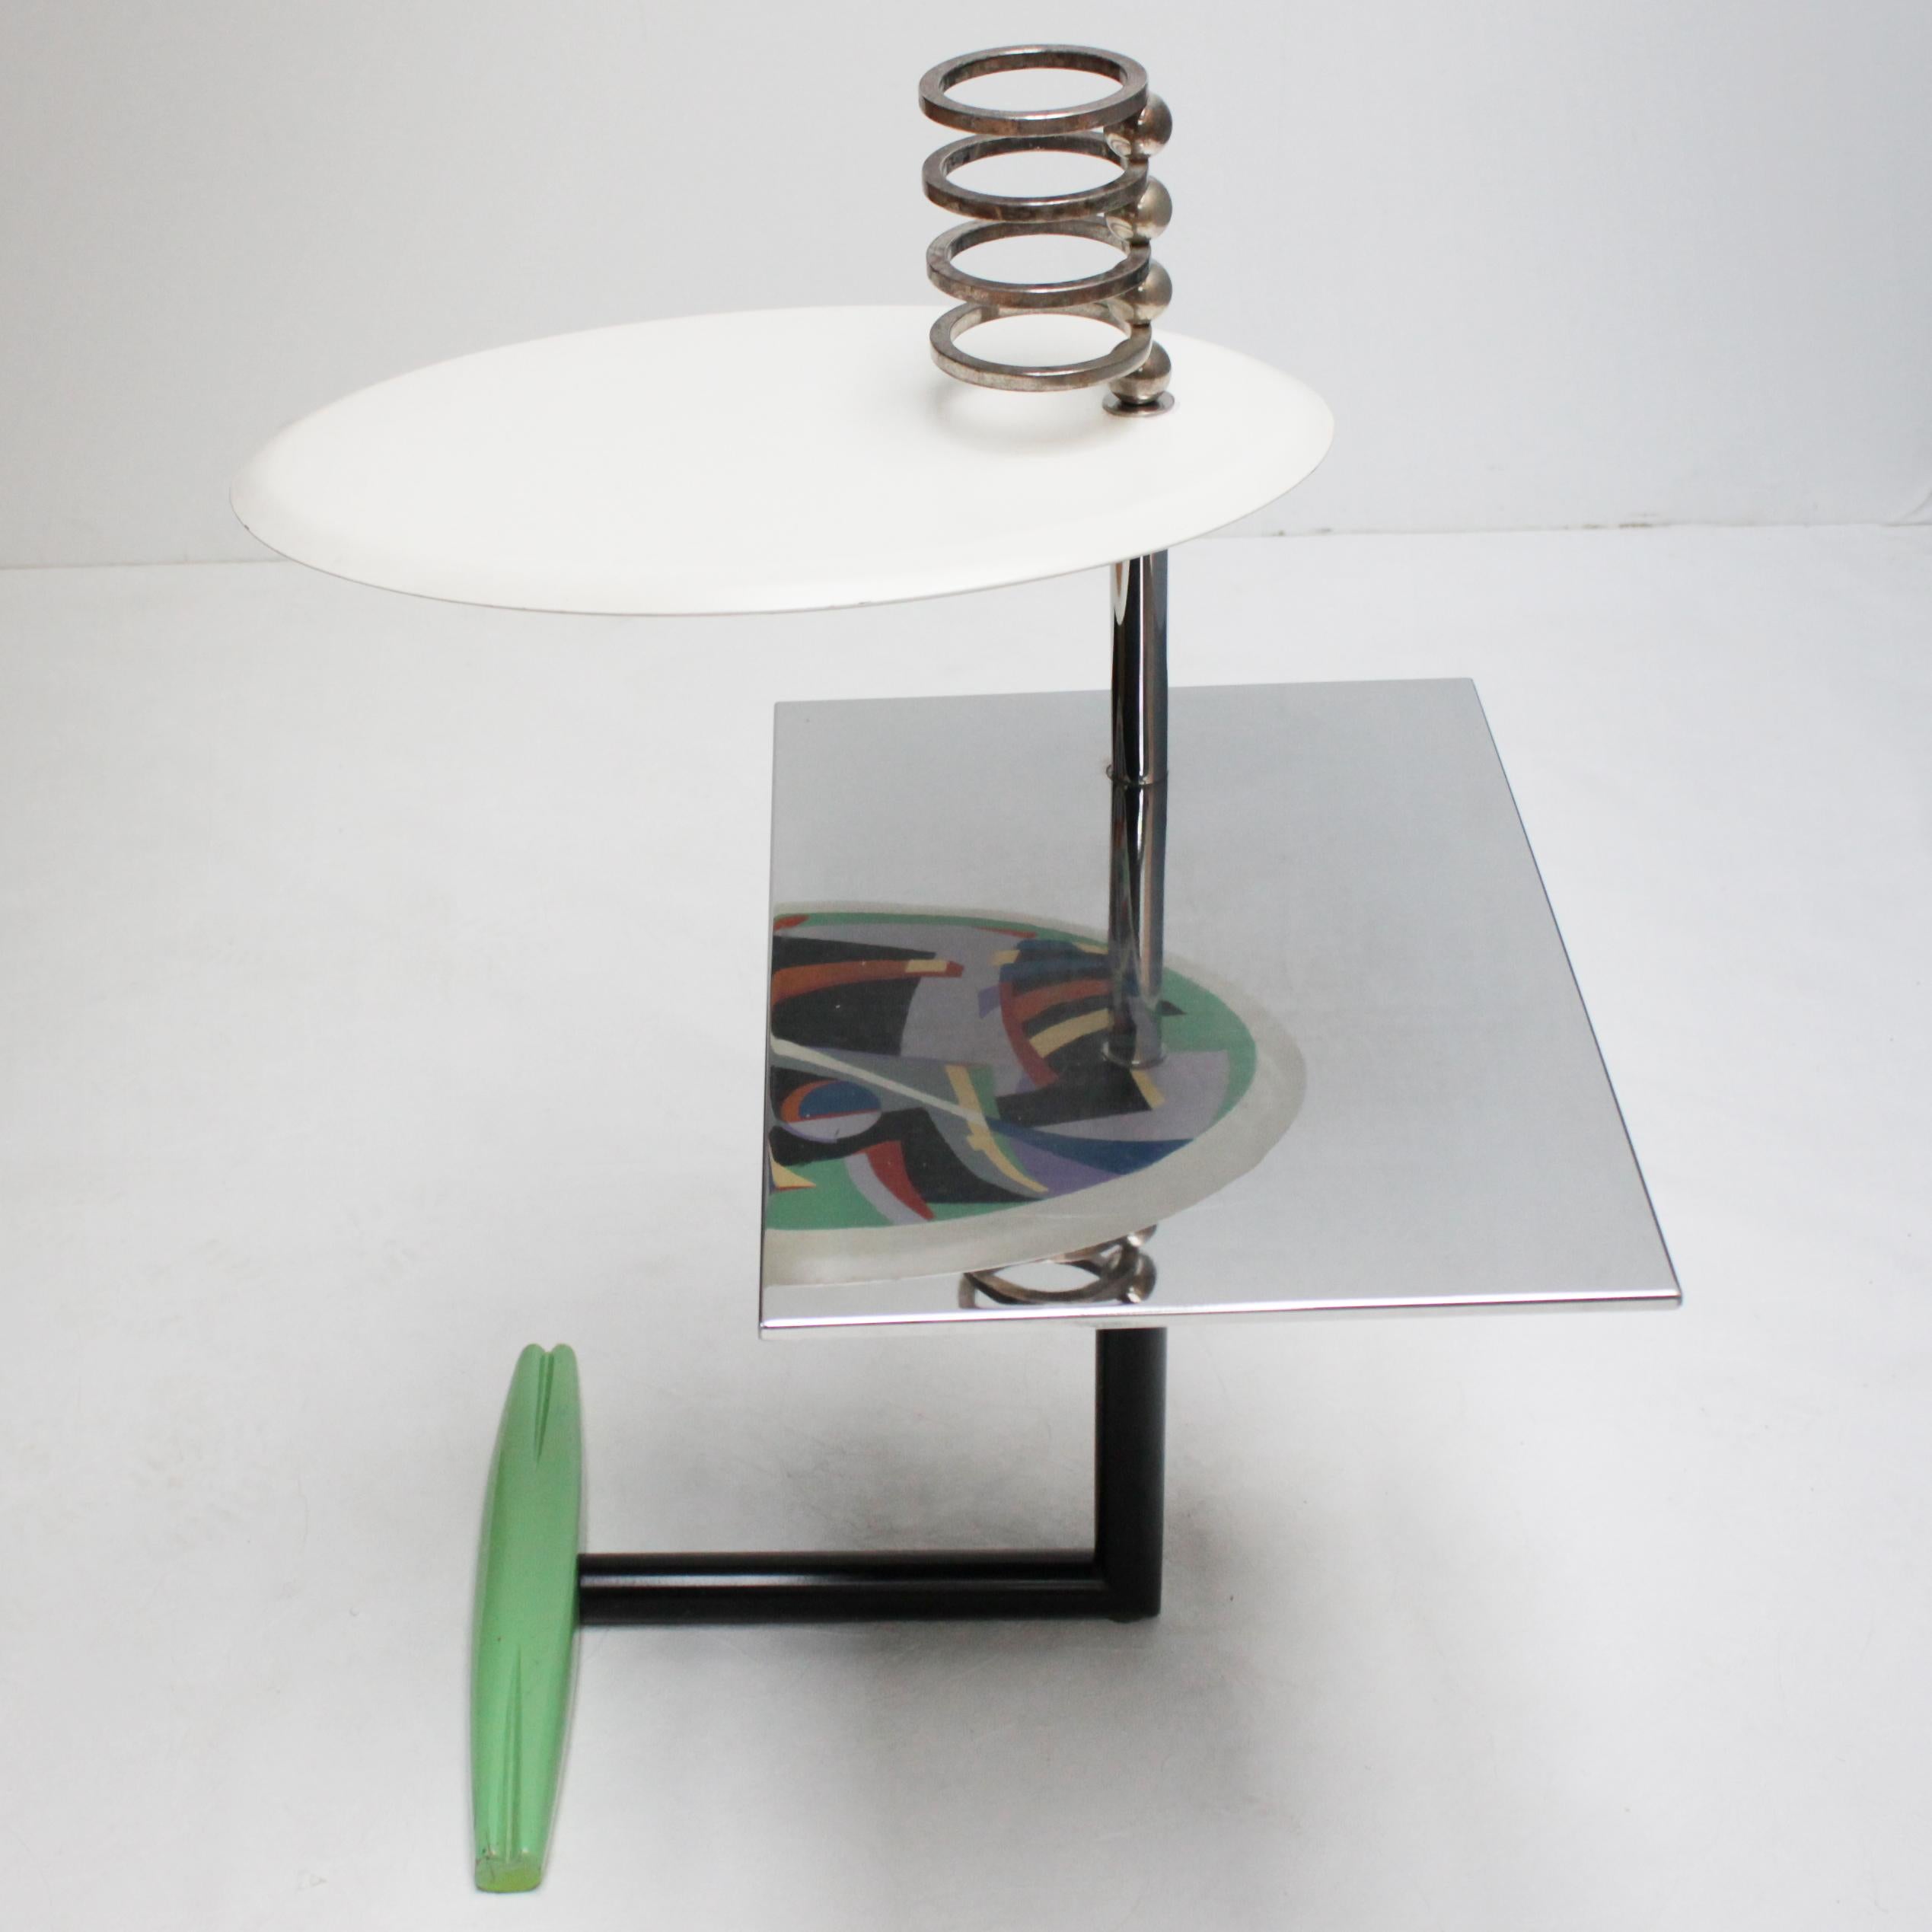 Post-Modern Table 'Acilio' by Alessandro Mendini for Zabro, Nuova Alchimia